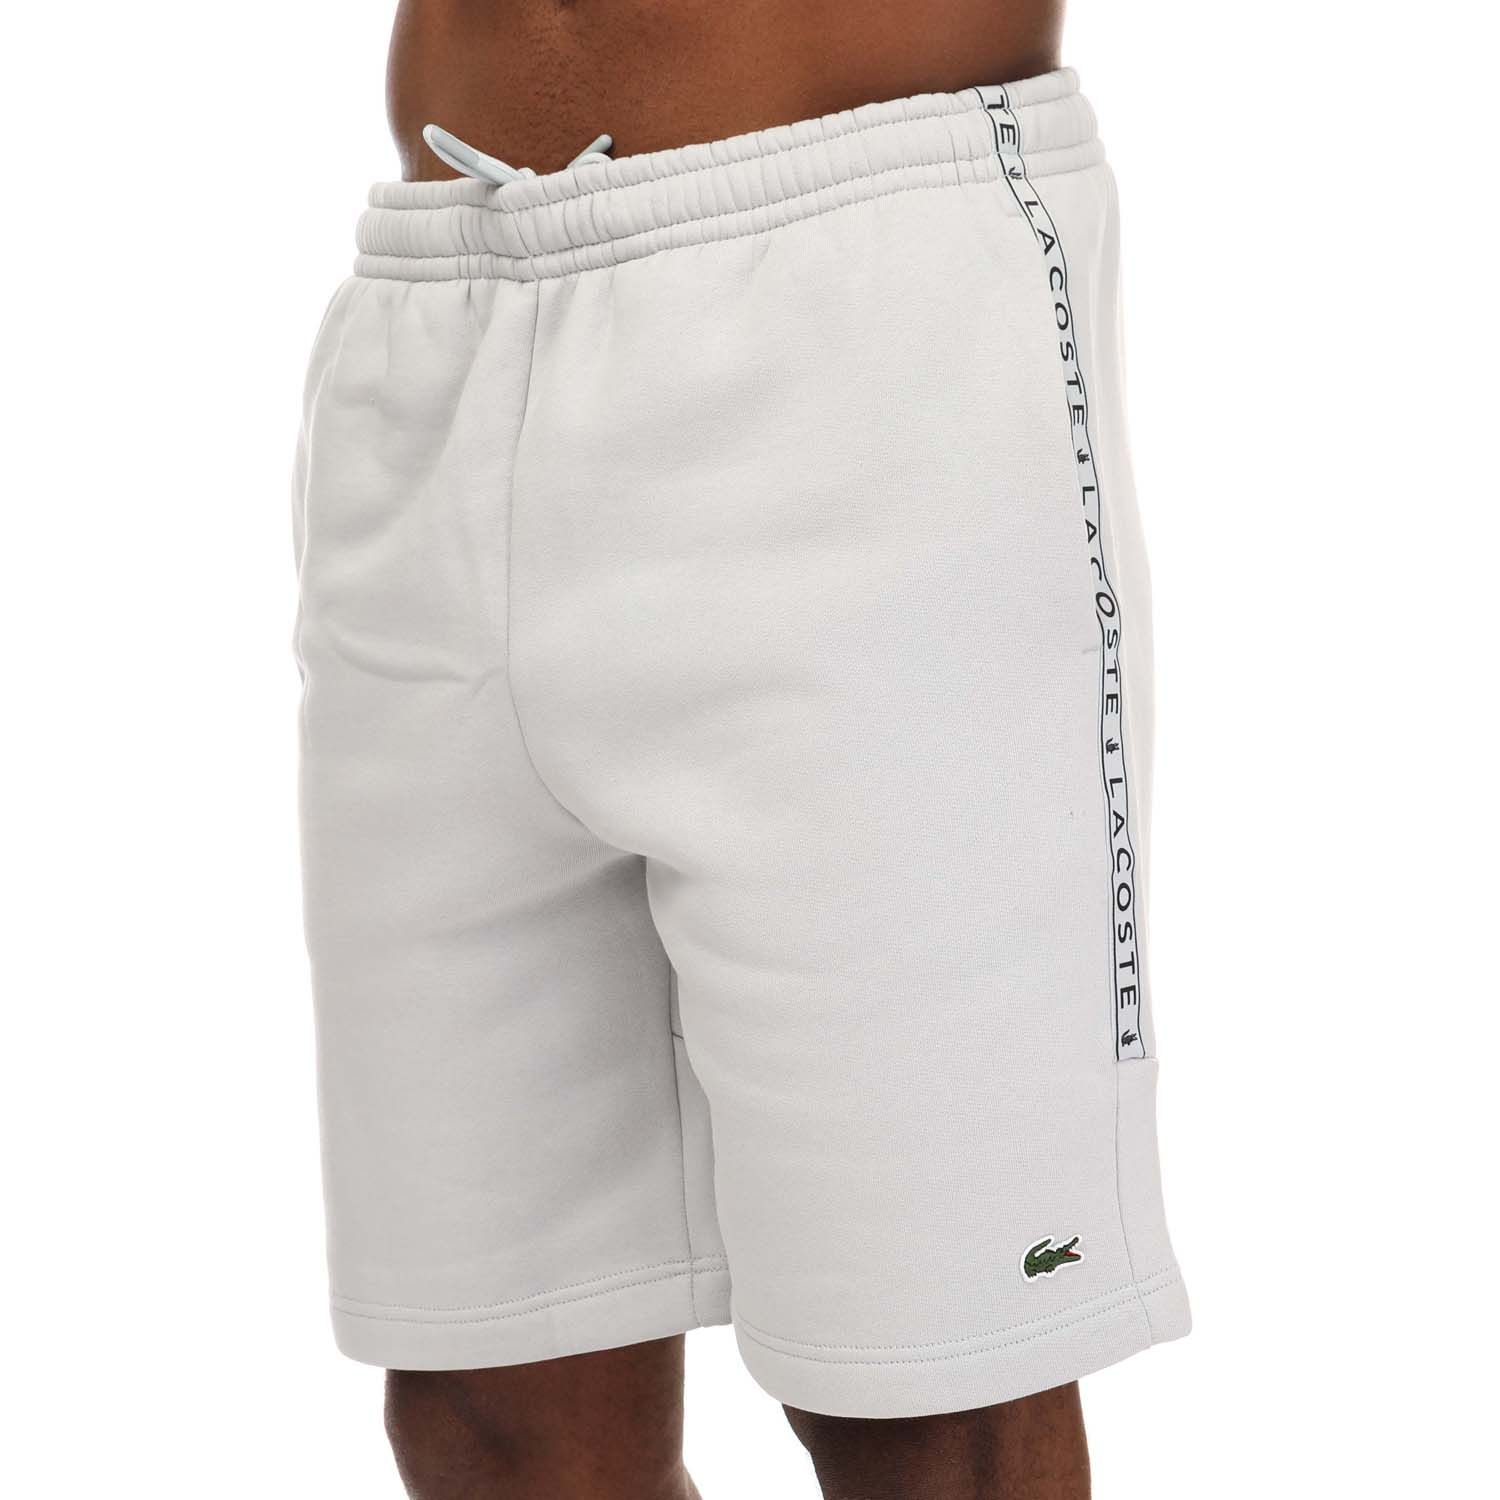 Pantalon de jogging Lacoste SPORT en coton à bandes contrastées